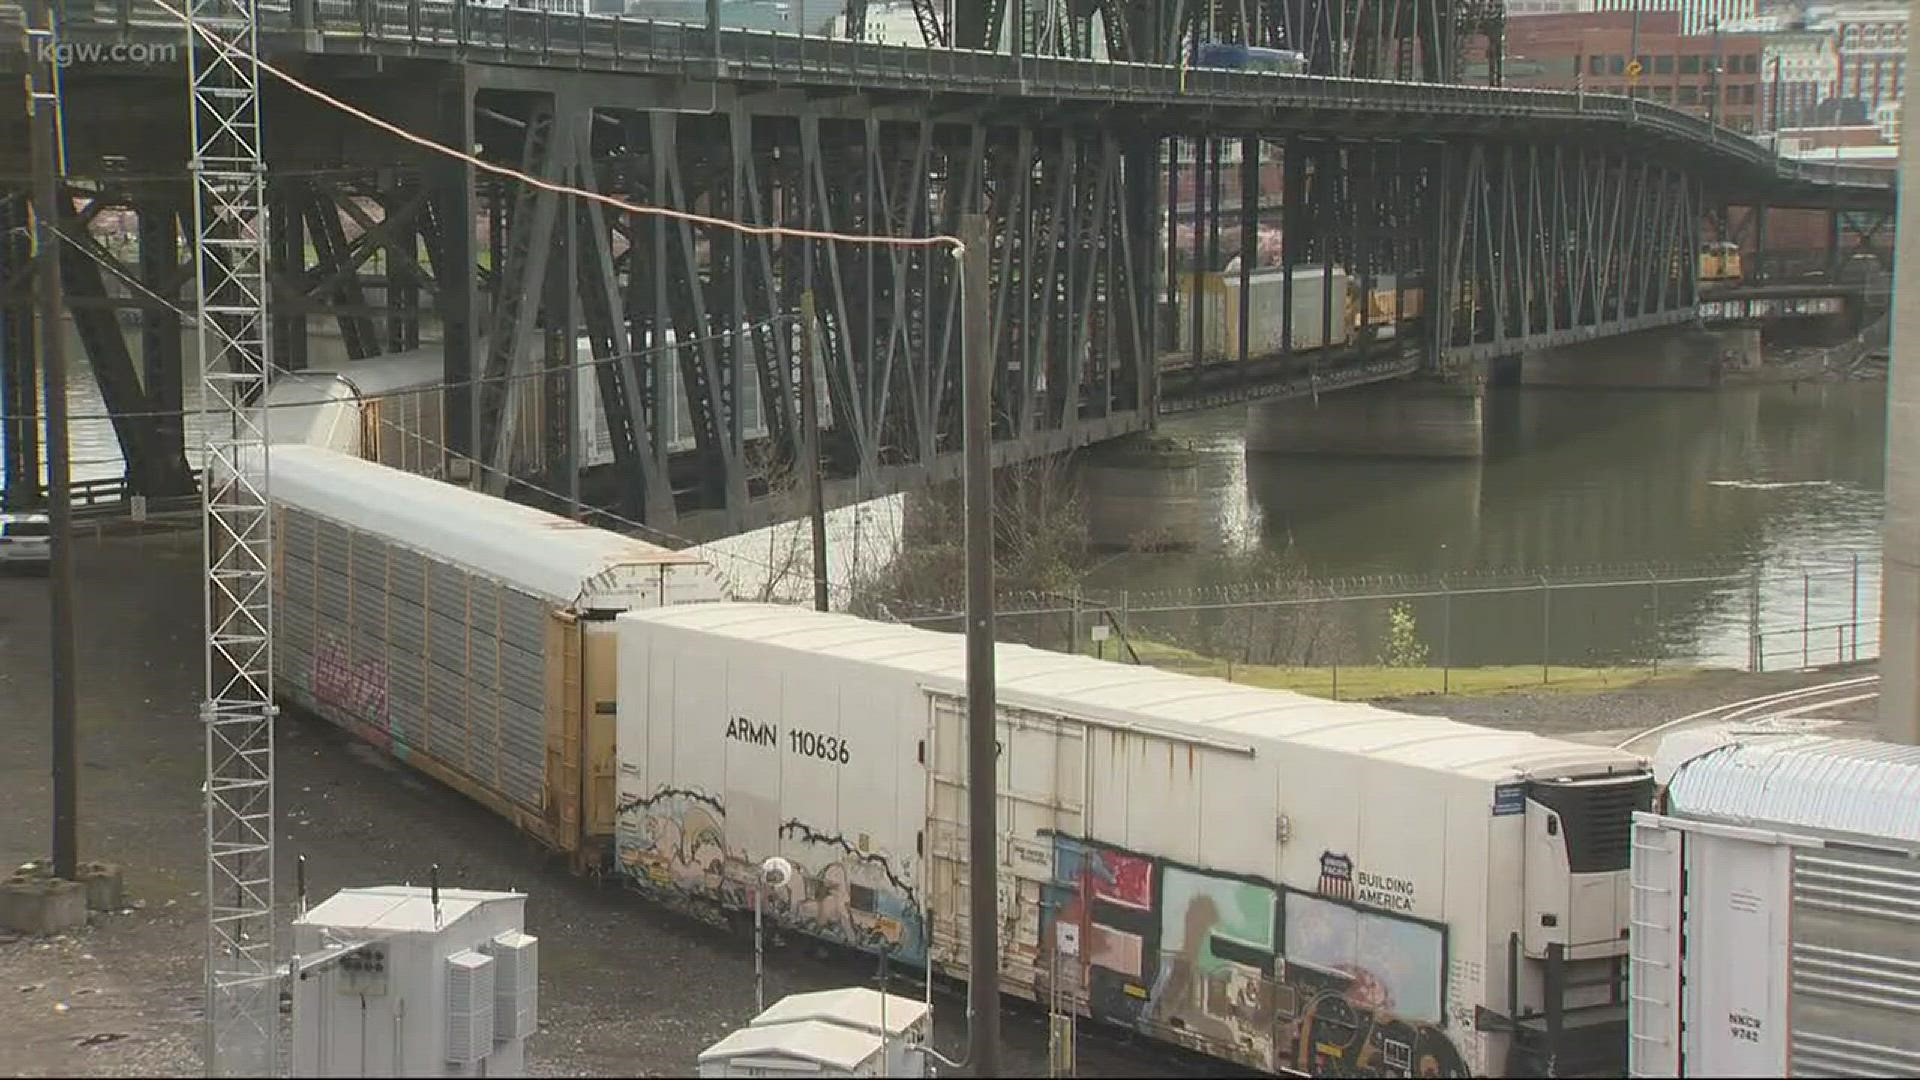 Train derails near Steel Bridge in Portland